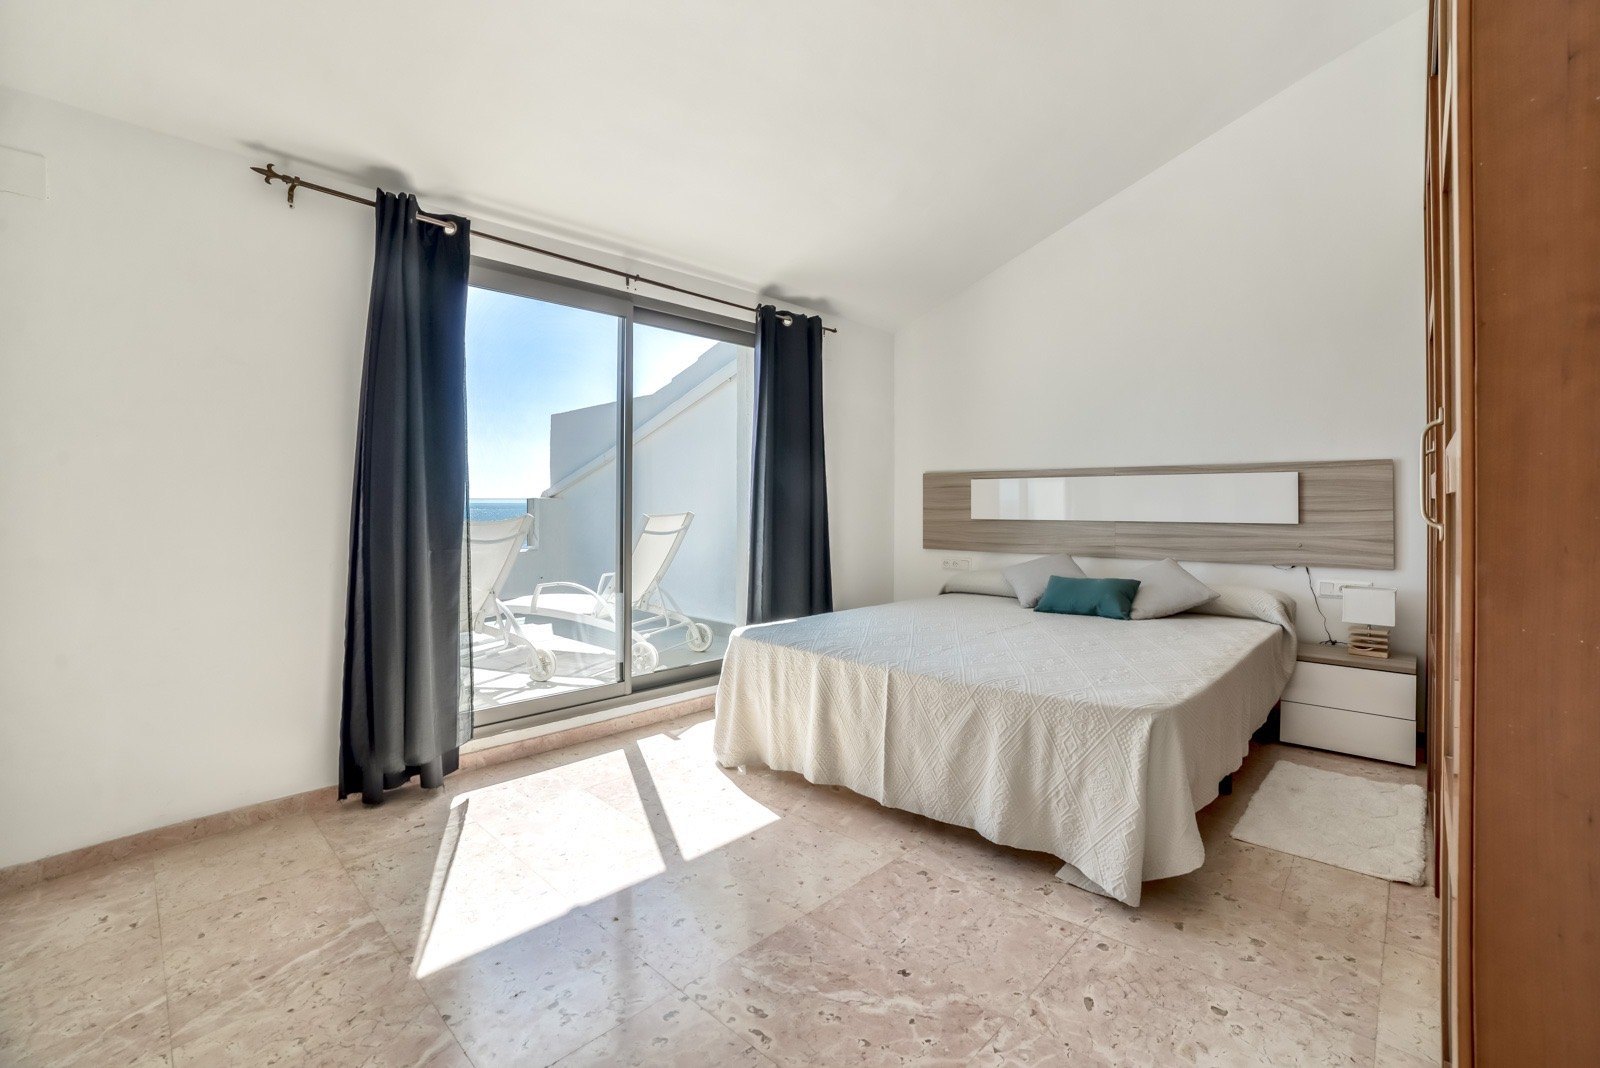 Enorm luxe penthouse met panoramisch uitzicht op zee in Campomanes